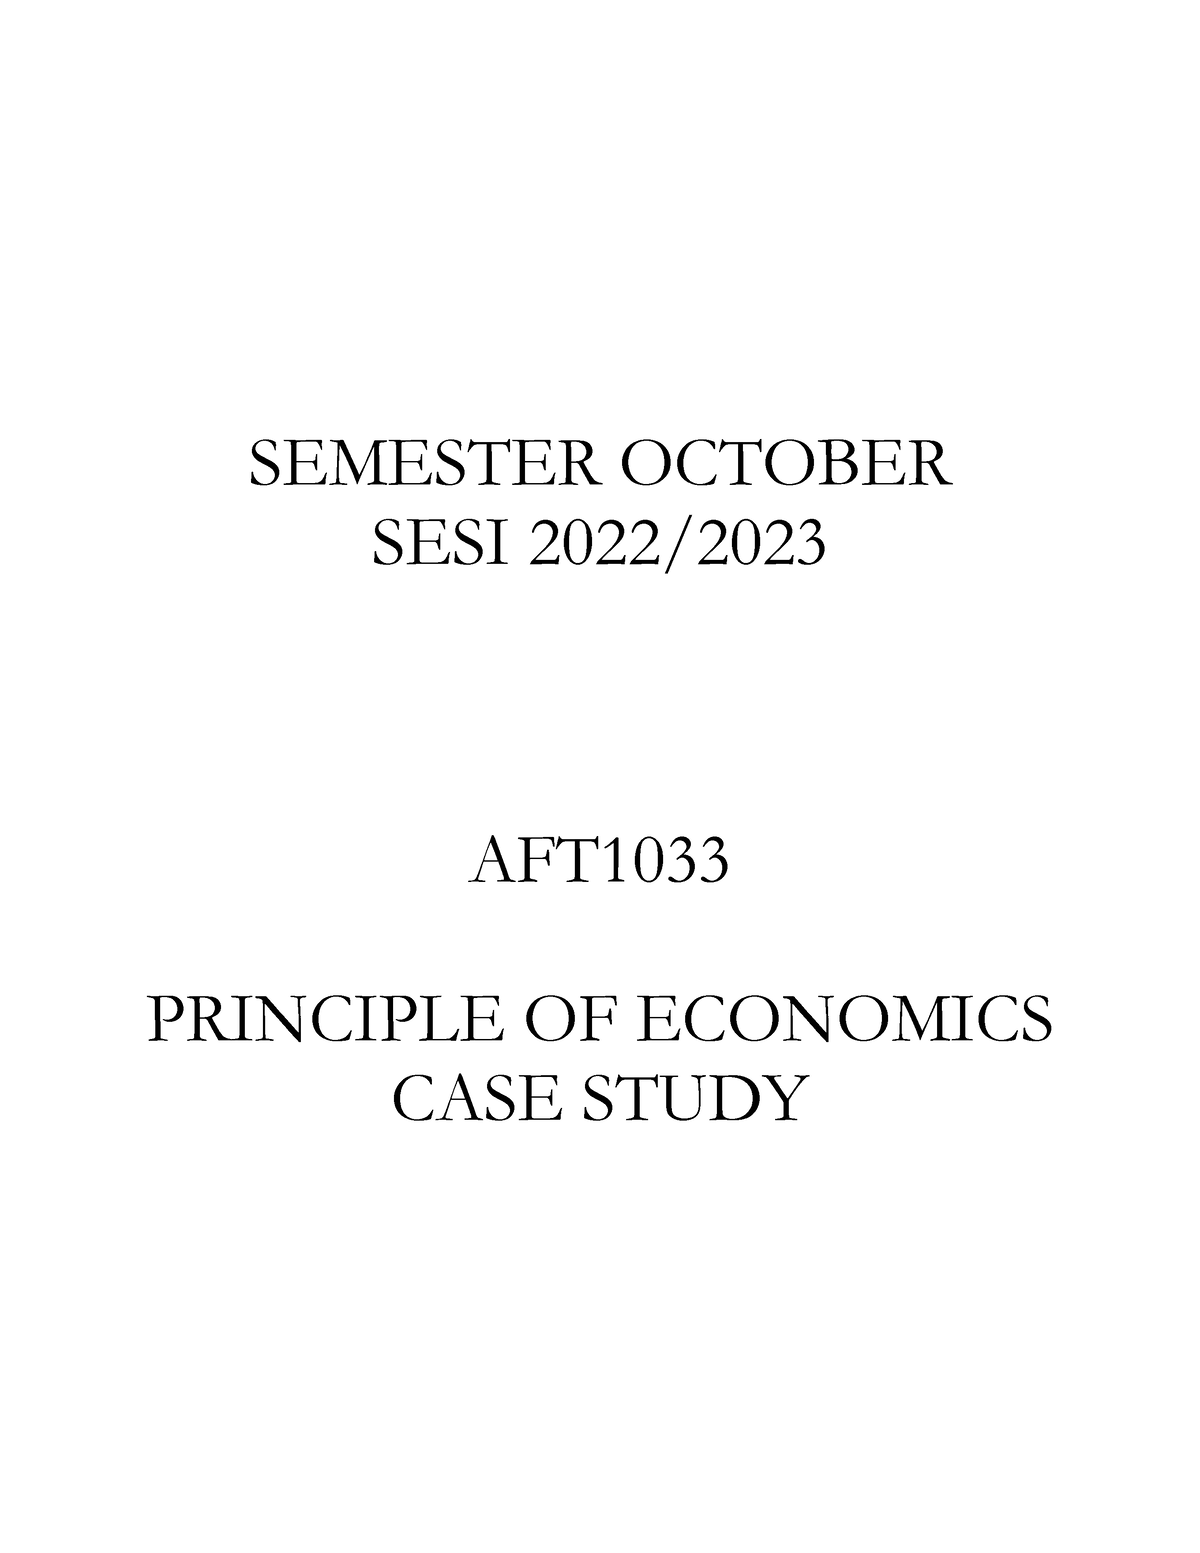 economics case study 2023